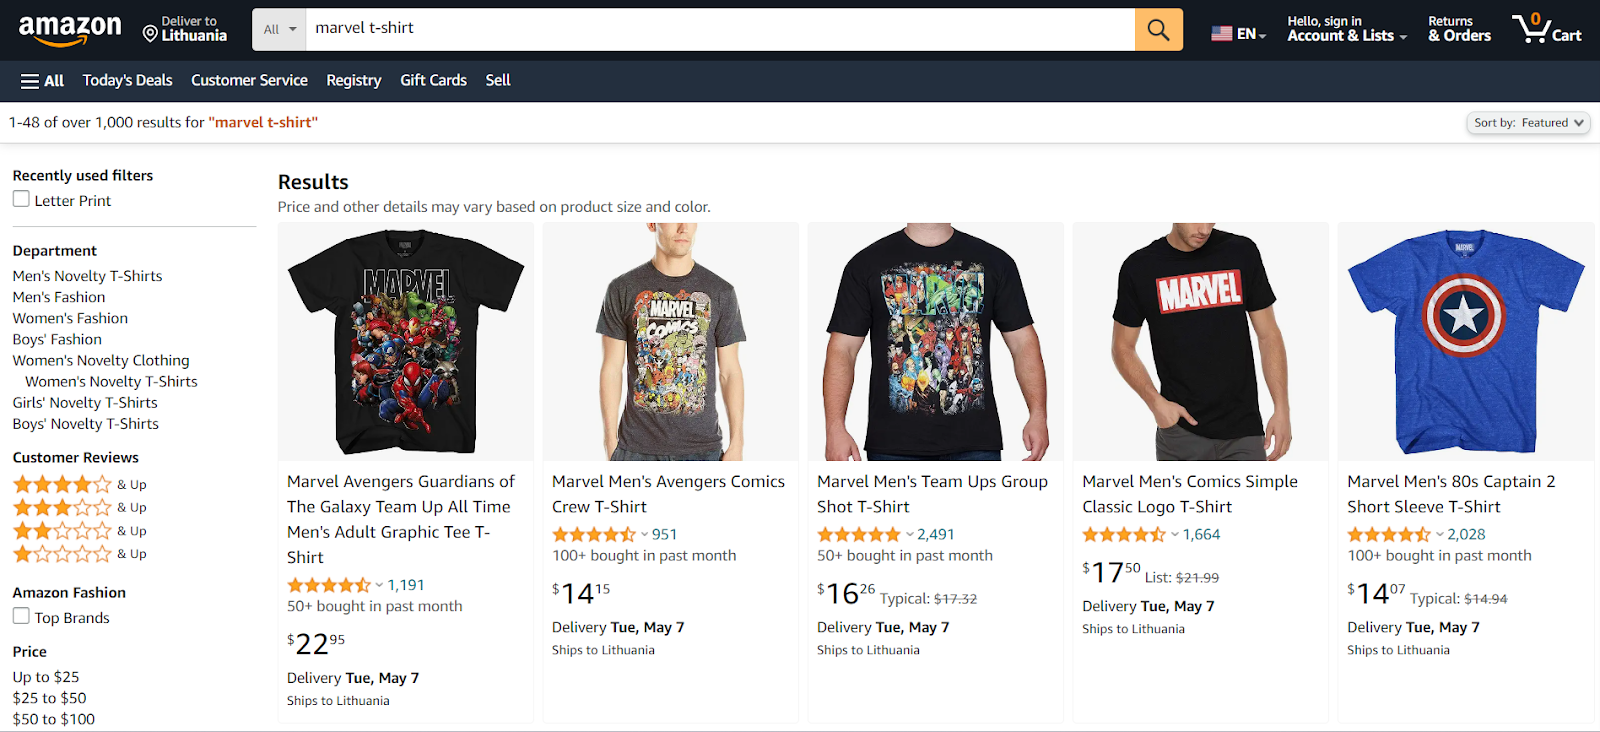 Amazon Merch on Demand trending topics